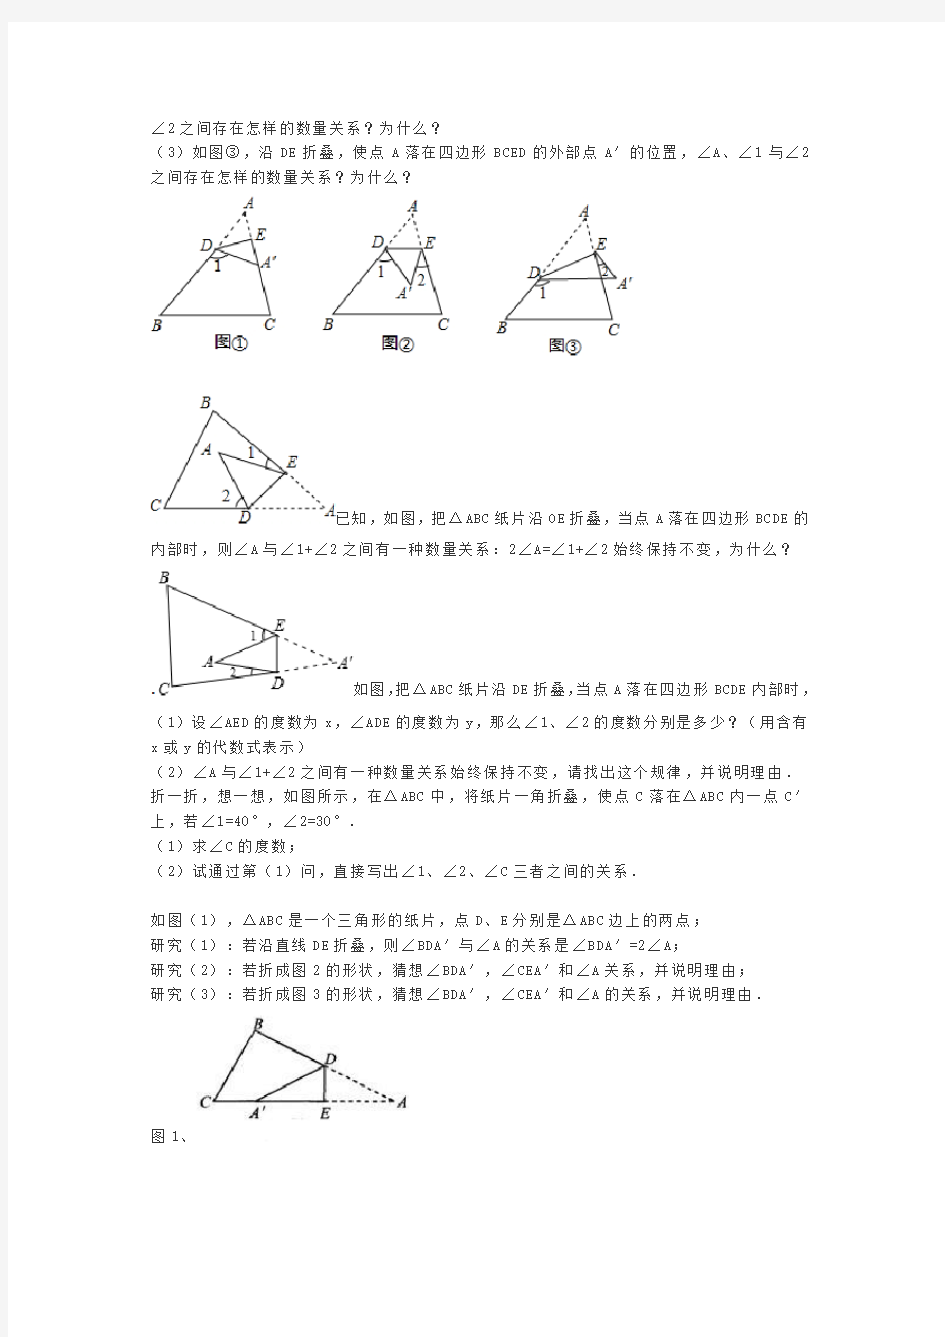 三角形折叠问题分析